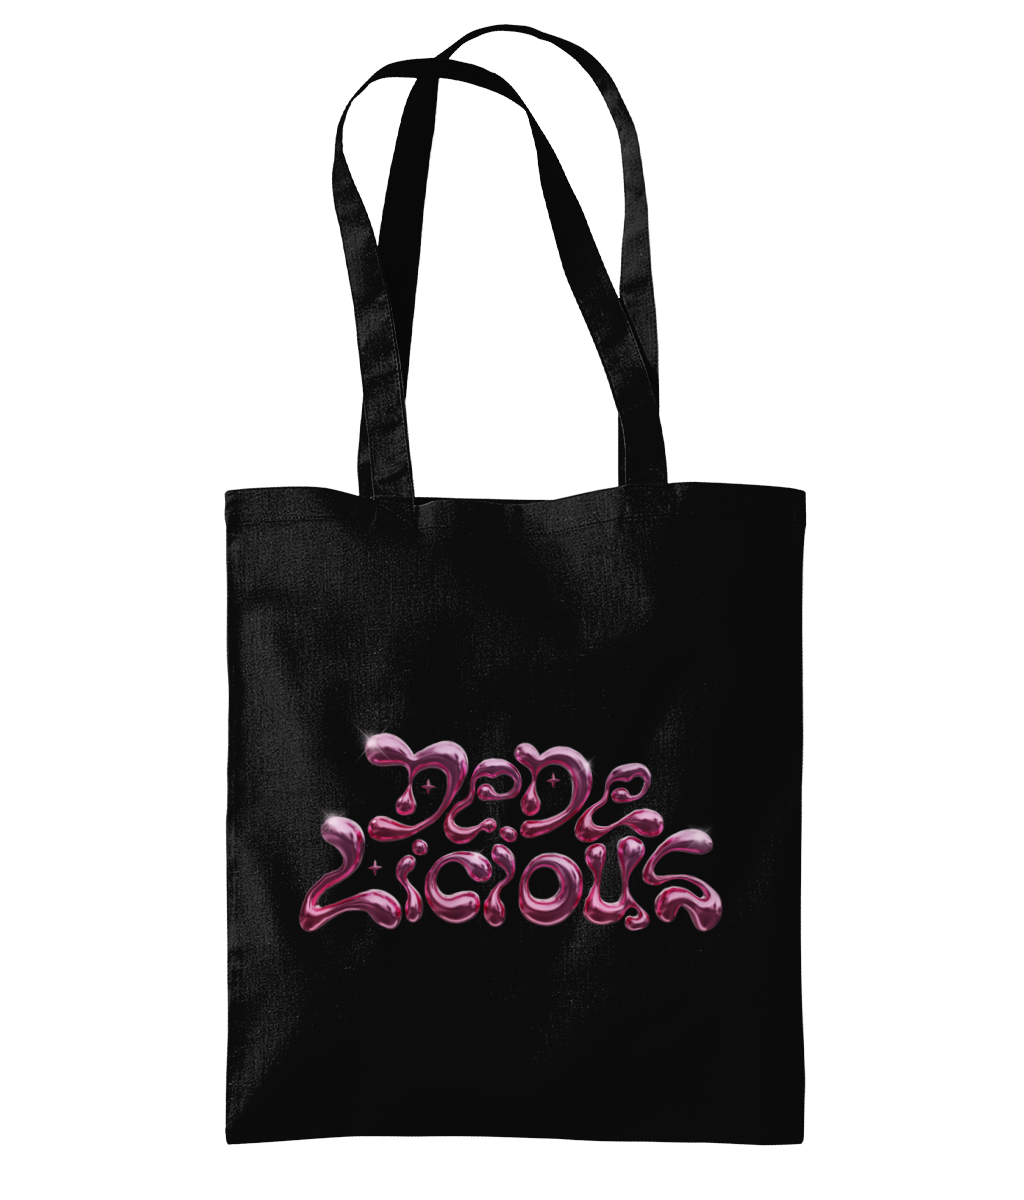 DeDe Licious Logo Tote Bag